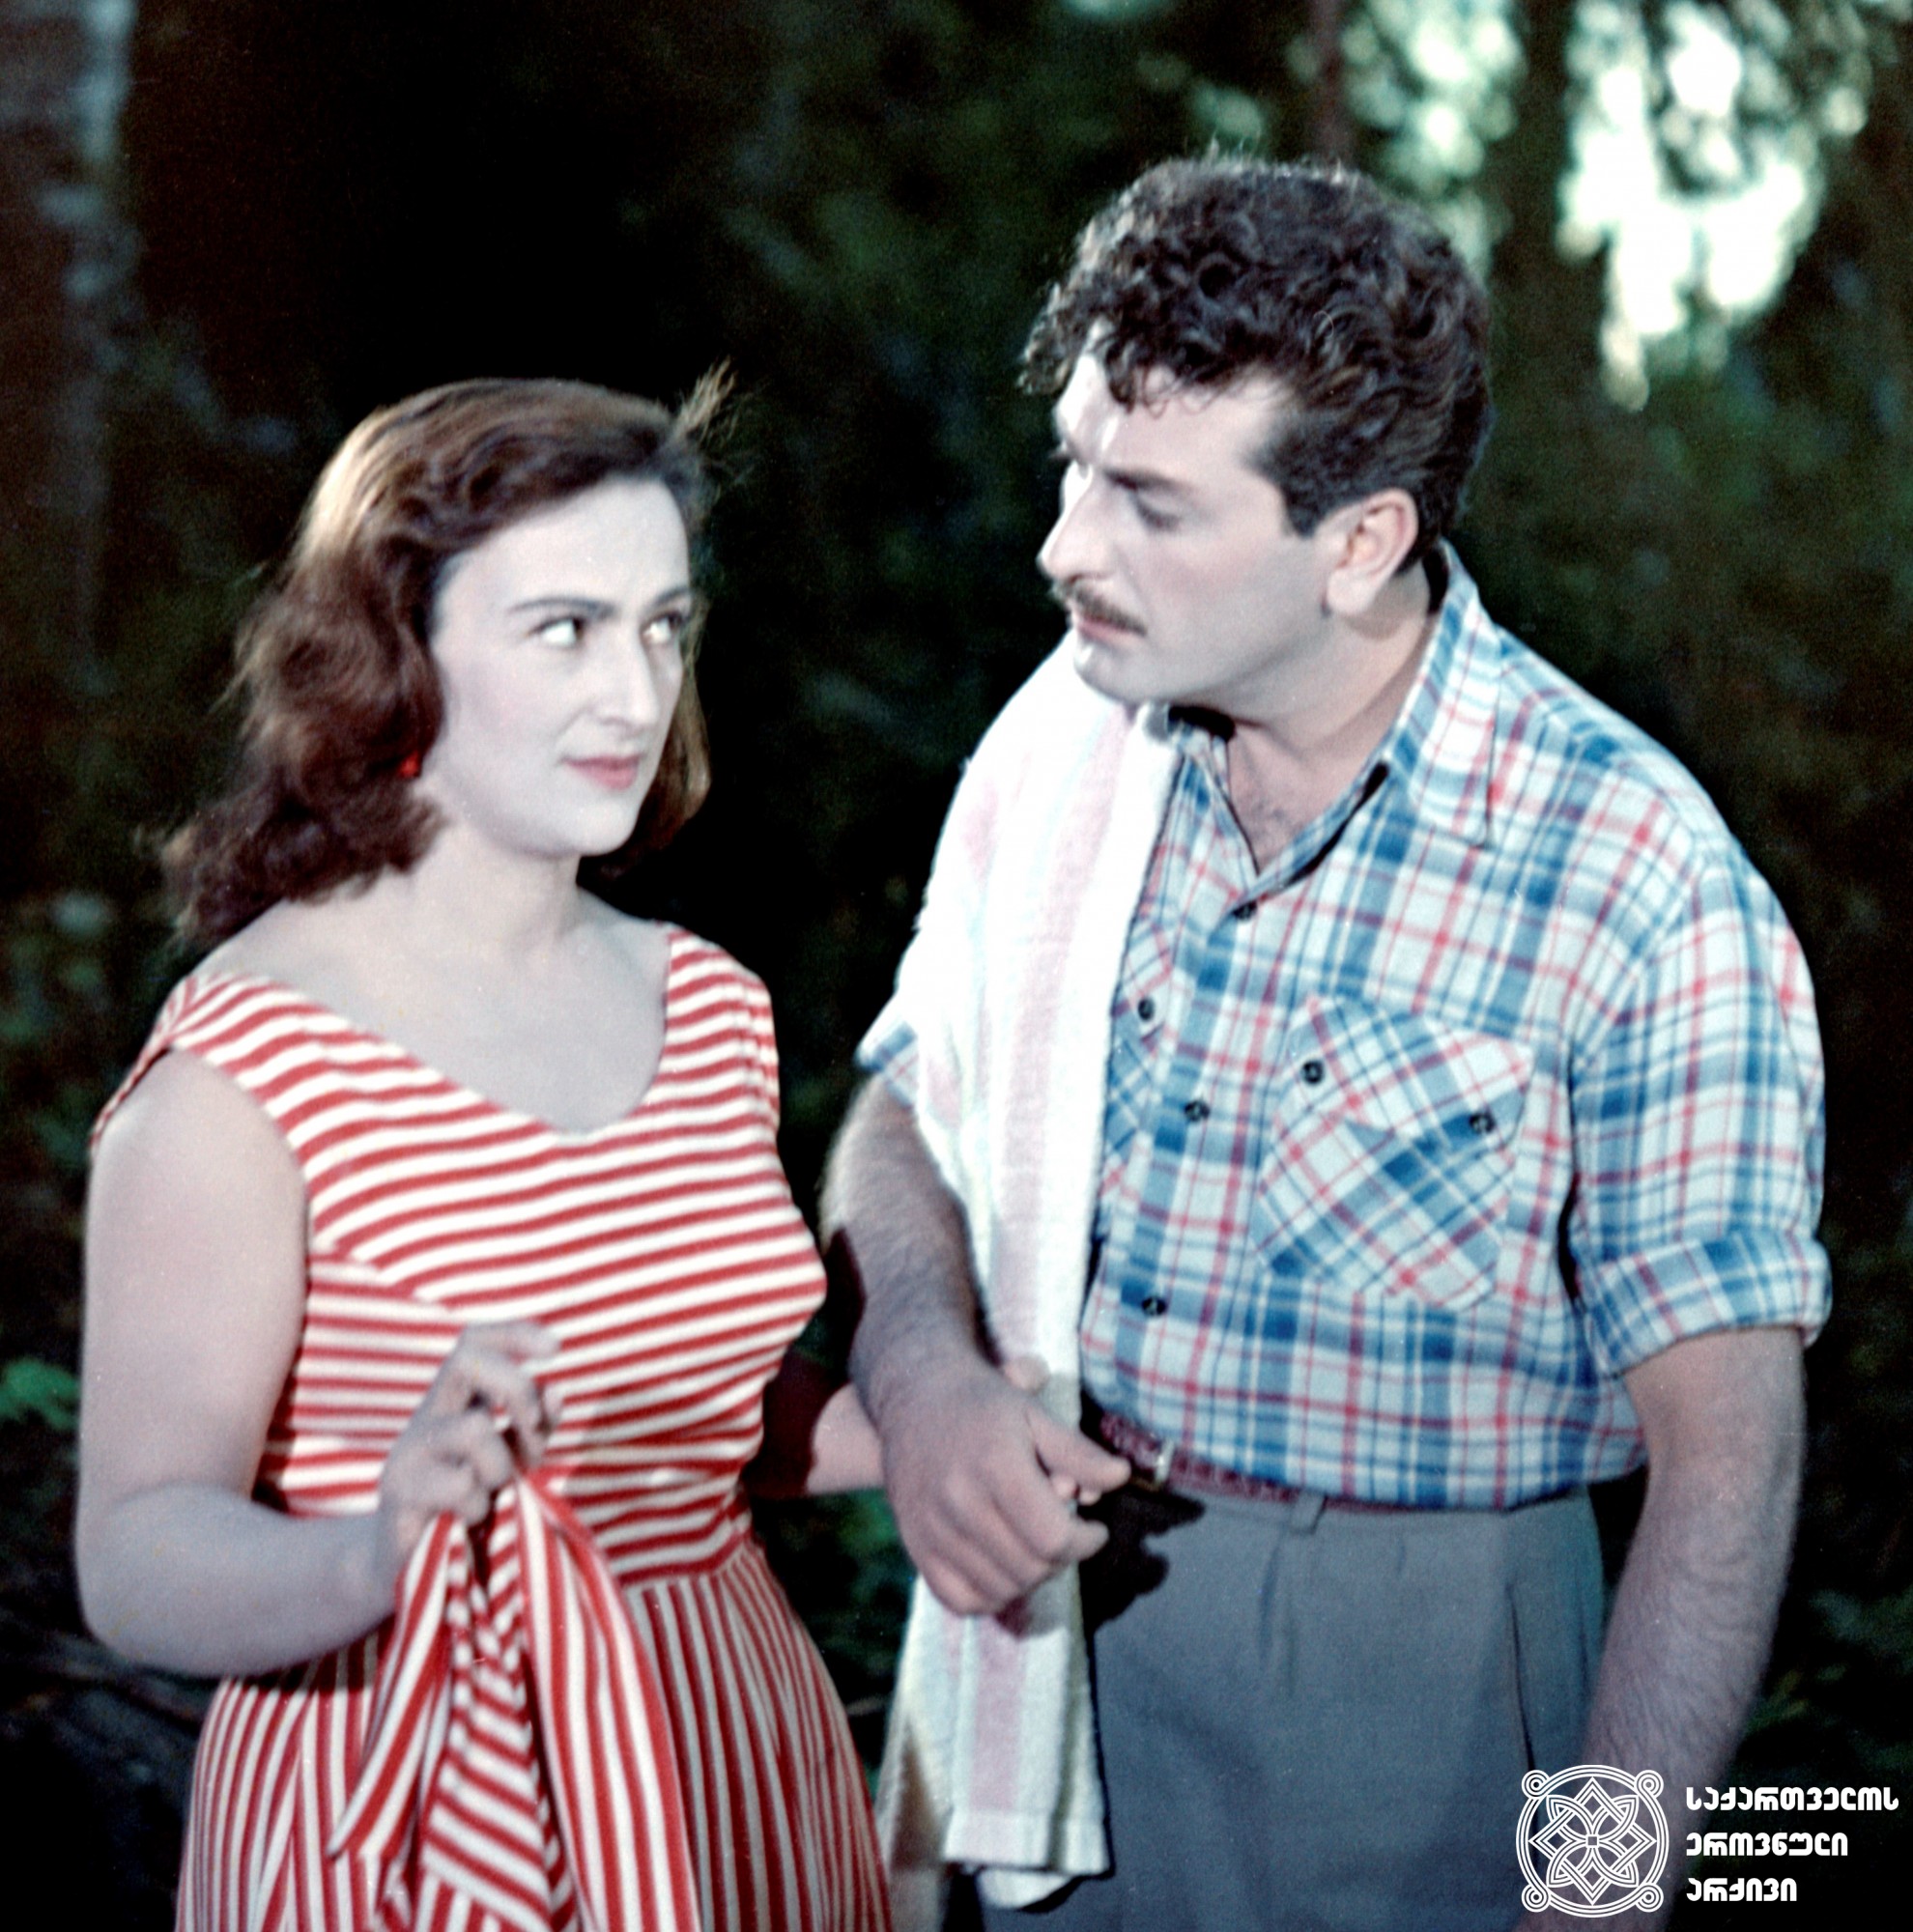 მხატვრული ფილმი „წარსული  ზაფხული“. ელიკო - მედეა ჯაფარიძე, კინორეჟისორი - რამაზ ჩხიკვაძე. <br>1959 წელი. <br>
Scene from the film Last Summer. Medea Japaridze as Eliko, Ramaz Chkhikvadze as the Film
Director. <br>
1959.